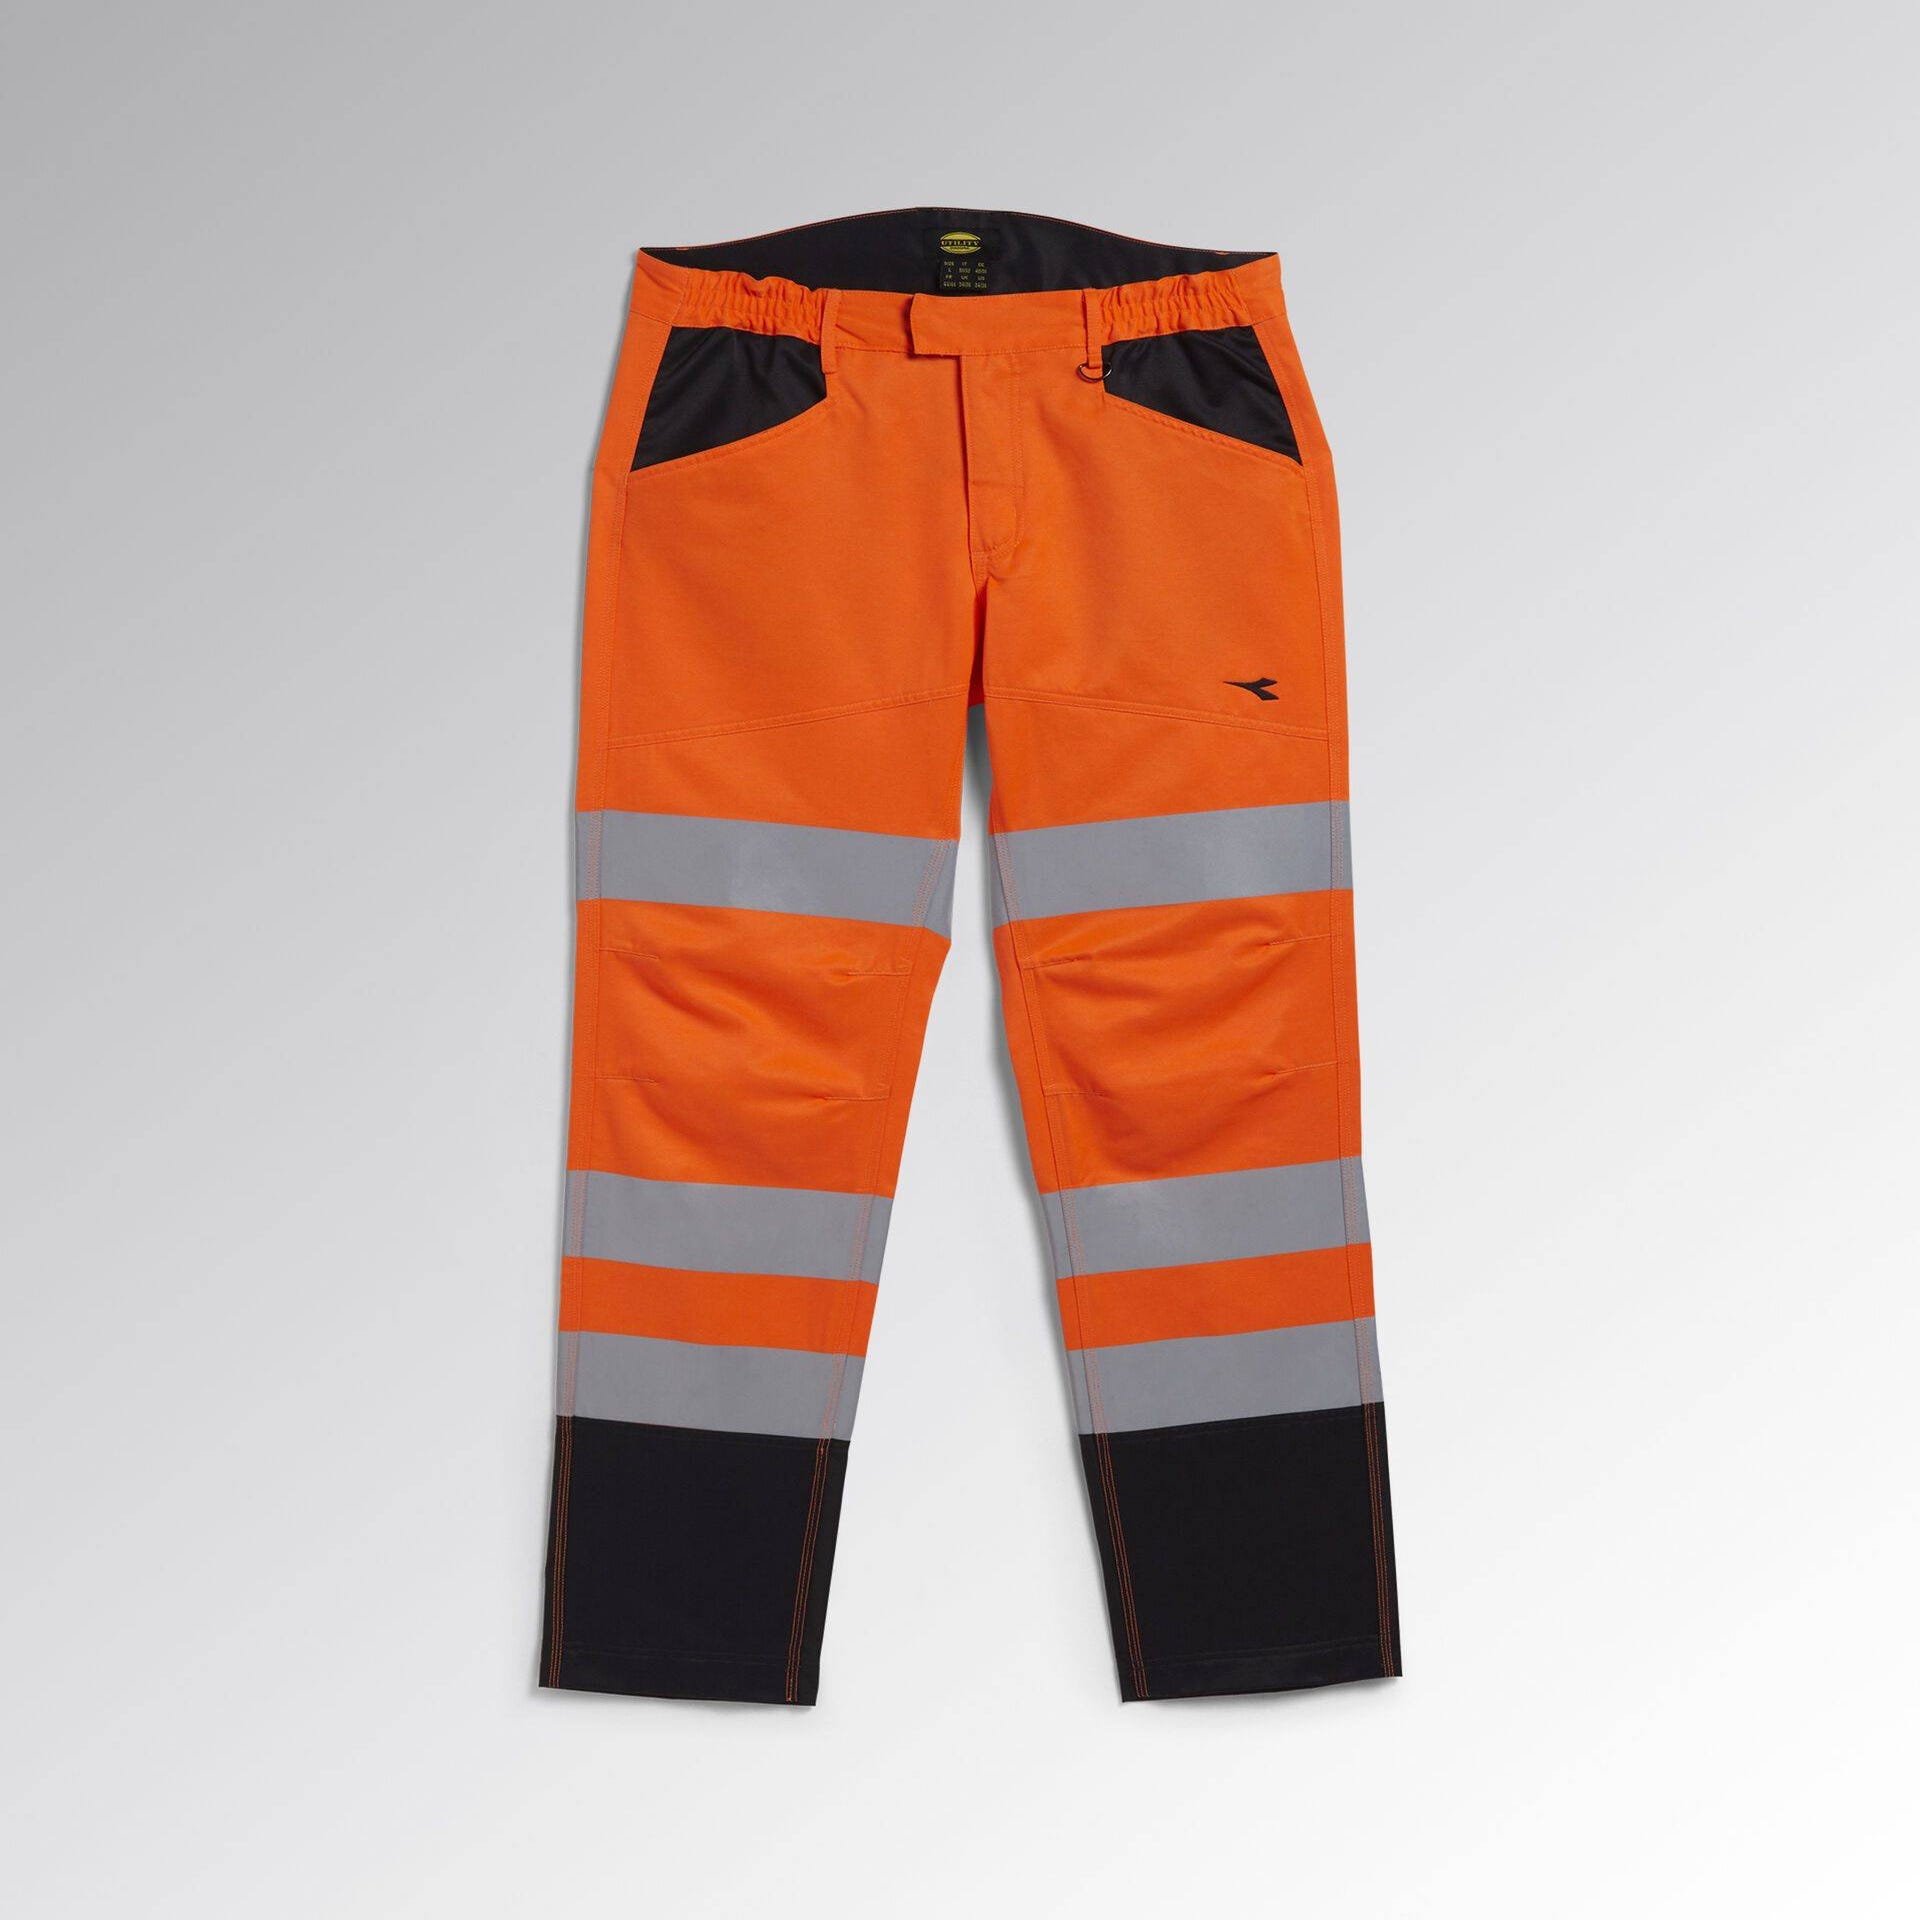 Pantalon de travail haute visibilité Diadora EN 20471:2013 2 Orange Fluo M 7